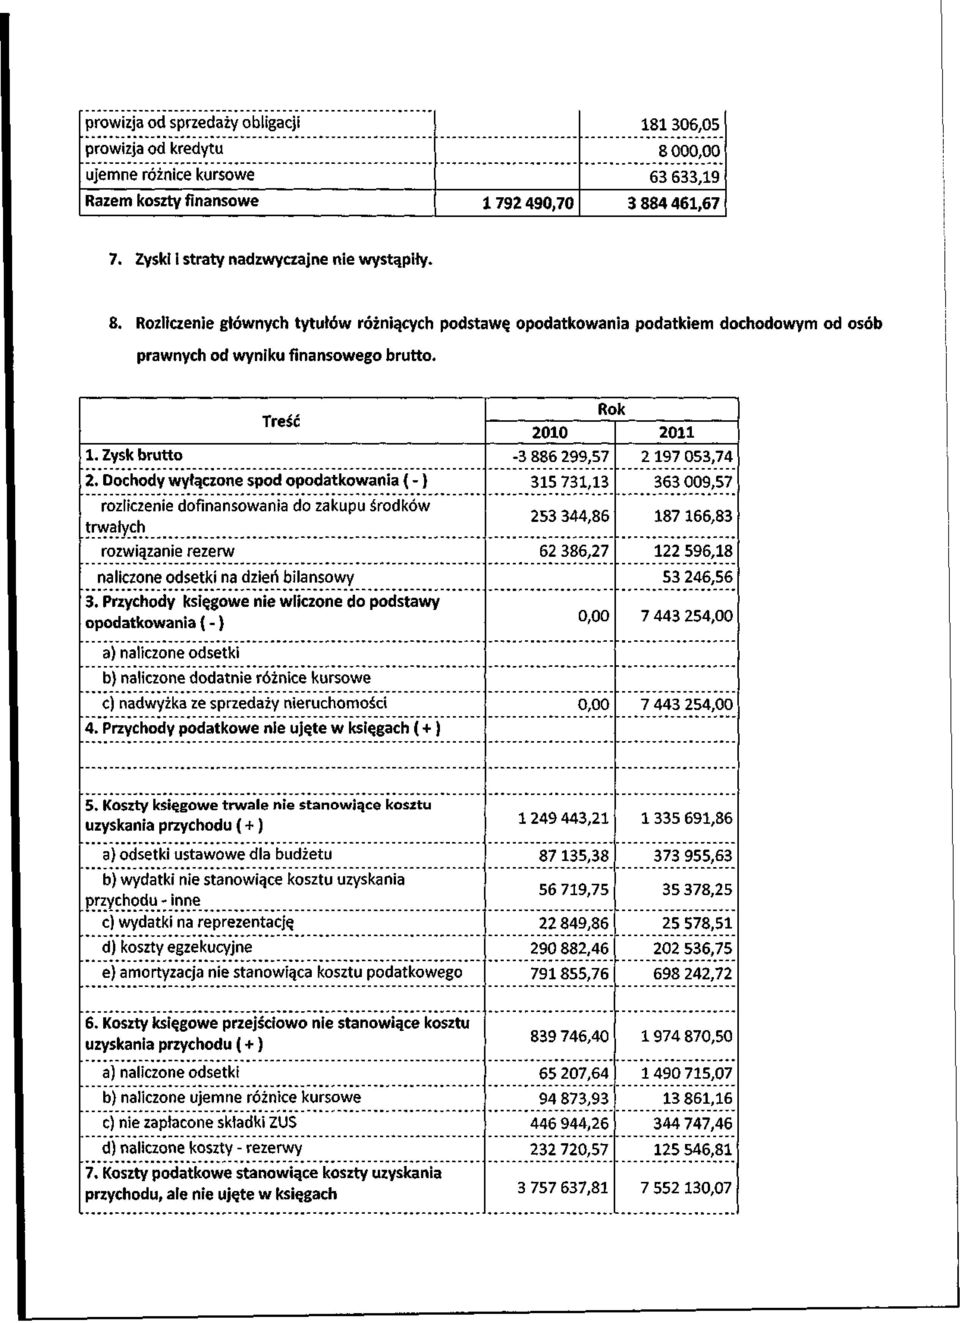 Dochody wytgczone spod opodatkowania ( - ) rozliczenie dofinansowania do zakupu srodkow trwatych rozwiqzanie rezerw naliczone odsetki na dzieri bilansowy 3.